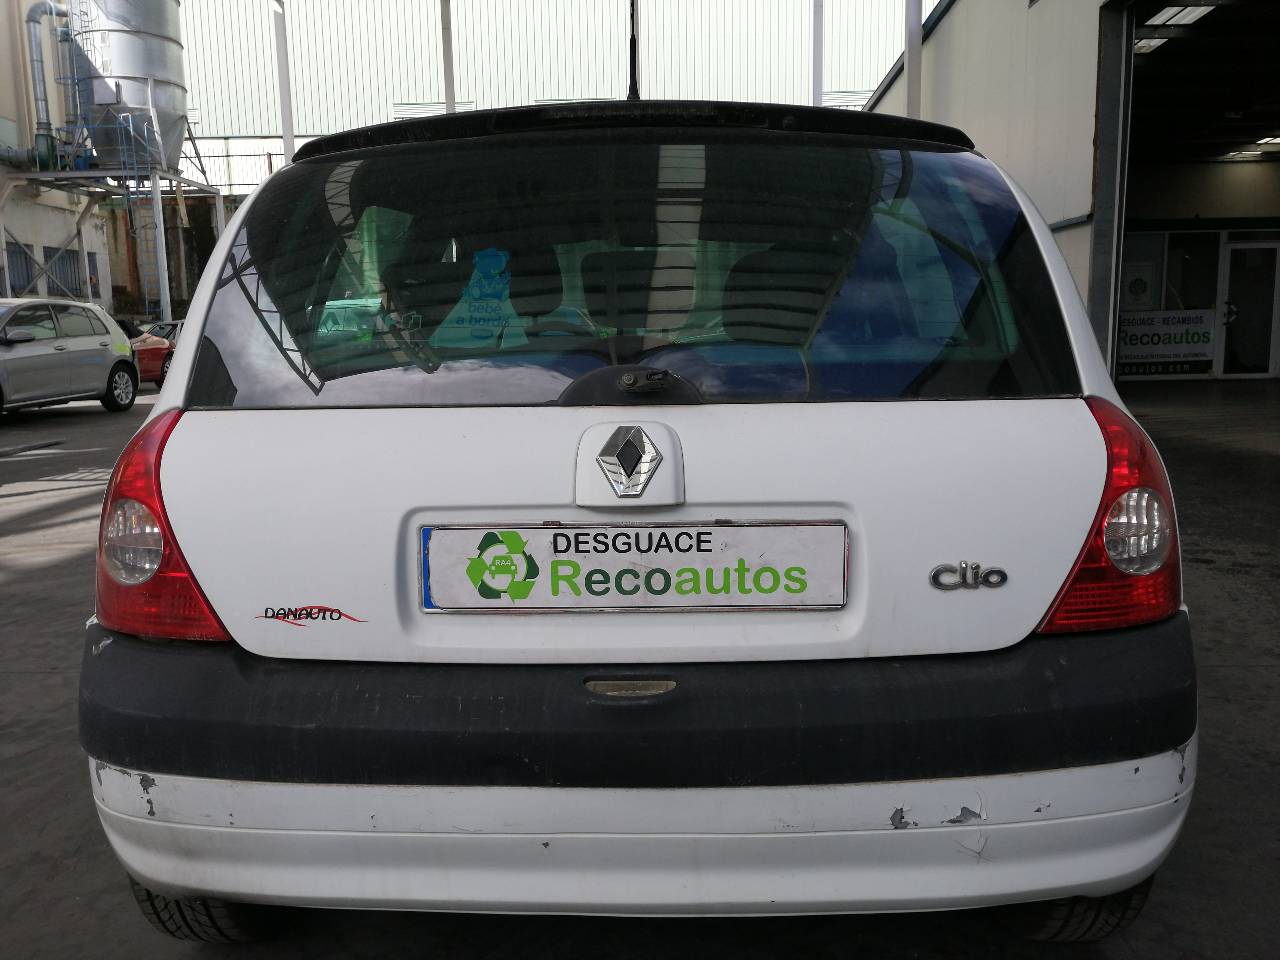 RENAULT Clio 3 generation (2005-2012) Rear Left Taillight 8200071413, DEALETA, 5PUERTAS 23894714